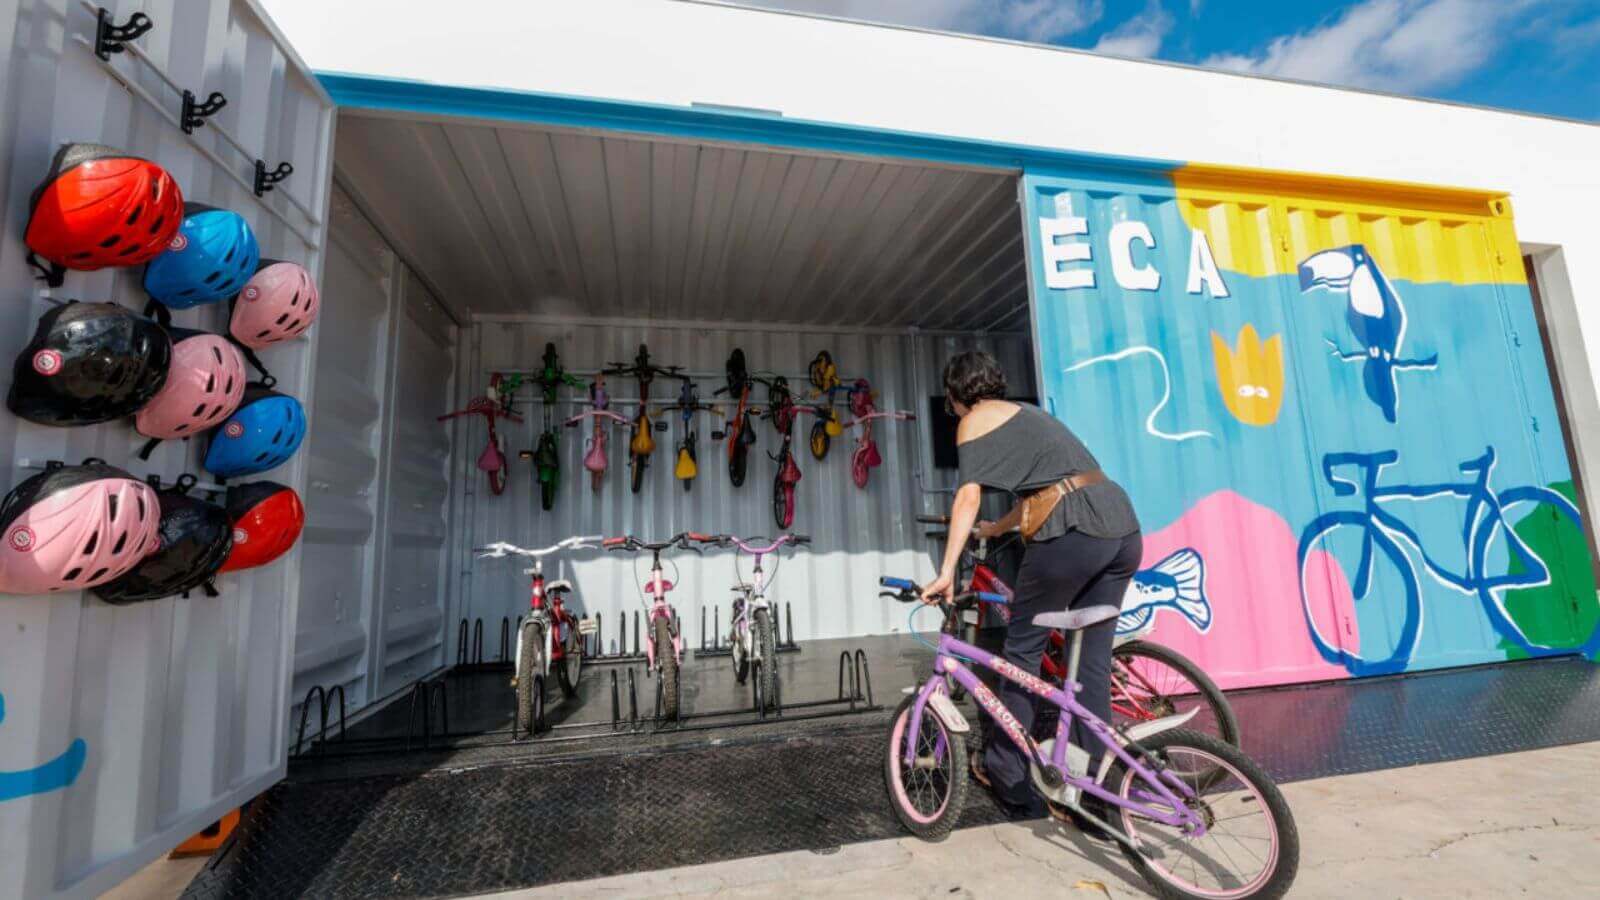 Imagem de uma mulher pegando uma bicicleta em uma bicicloteca de Jundiaí, que possui capacetes coloridos pendurados e bicicletas organizadas dentro de um contêiner decorado.